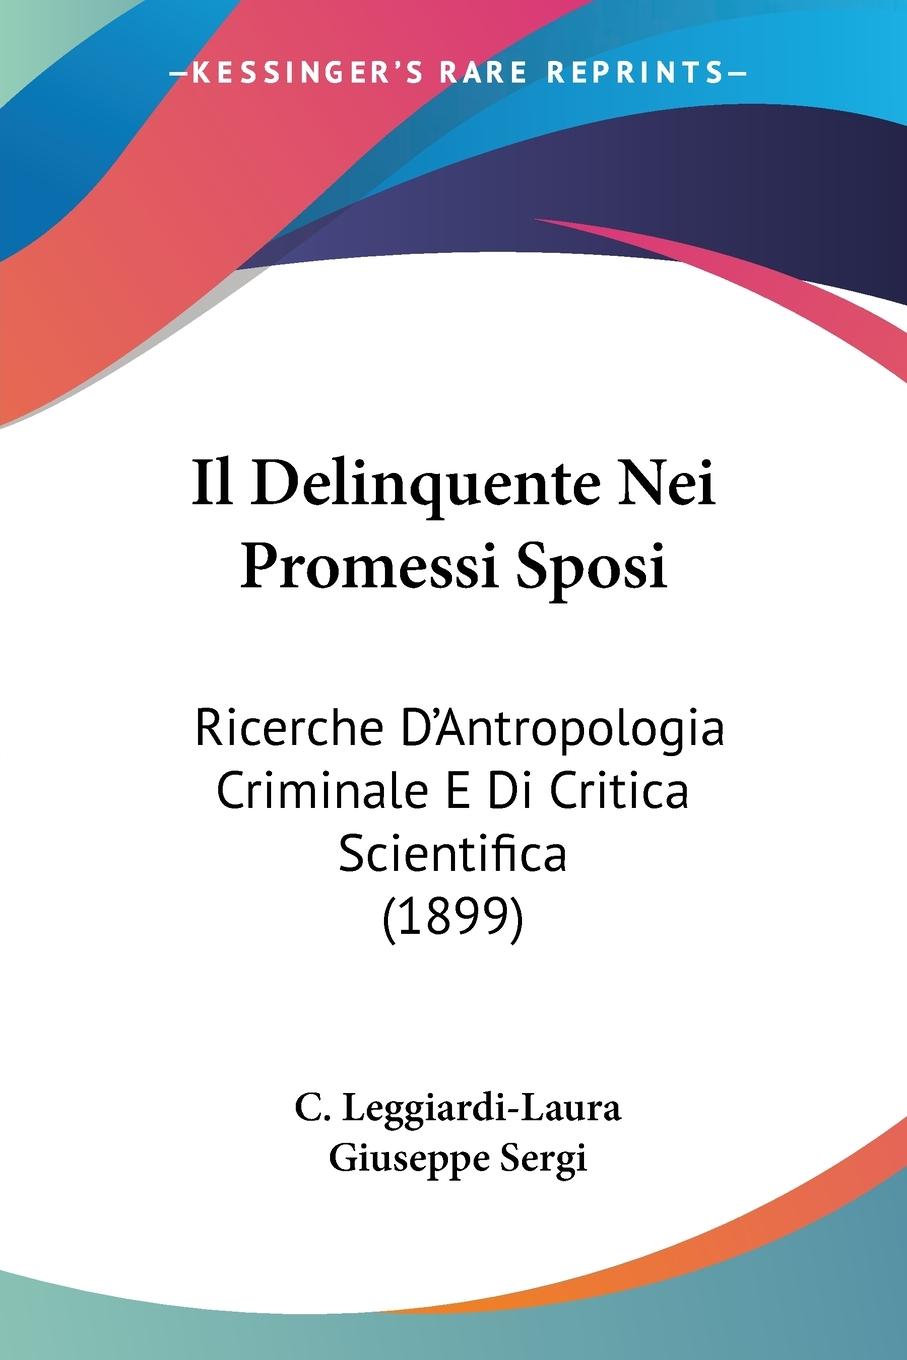 Il Delinquente Nei Promessi Sposi - Leggiardi-Laura, C.